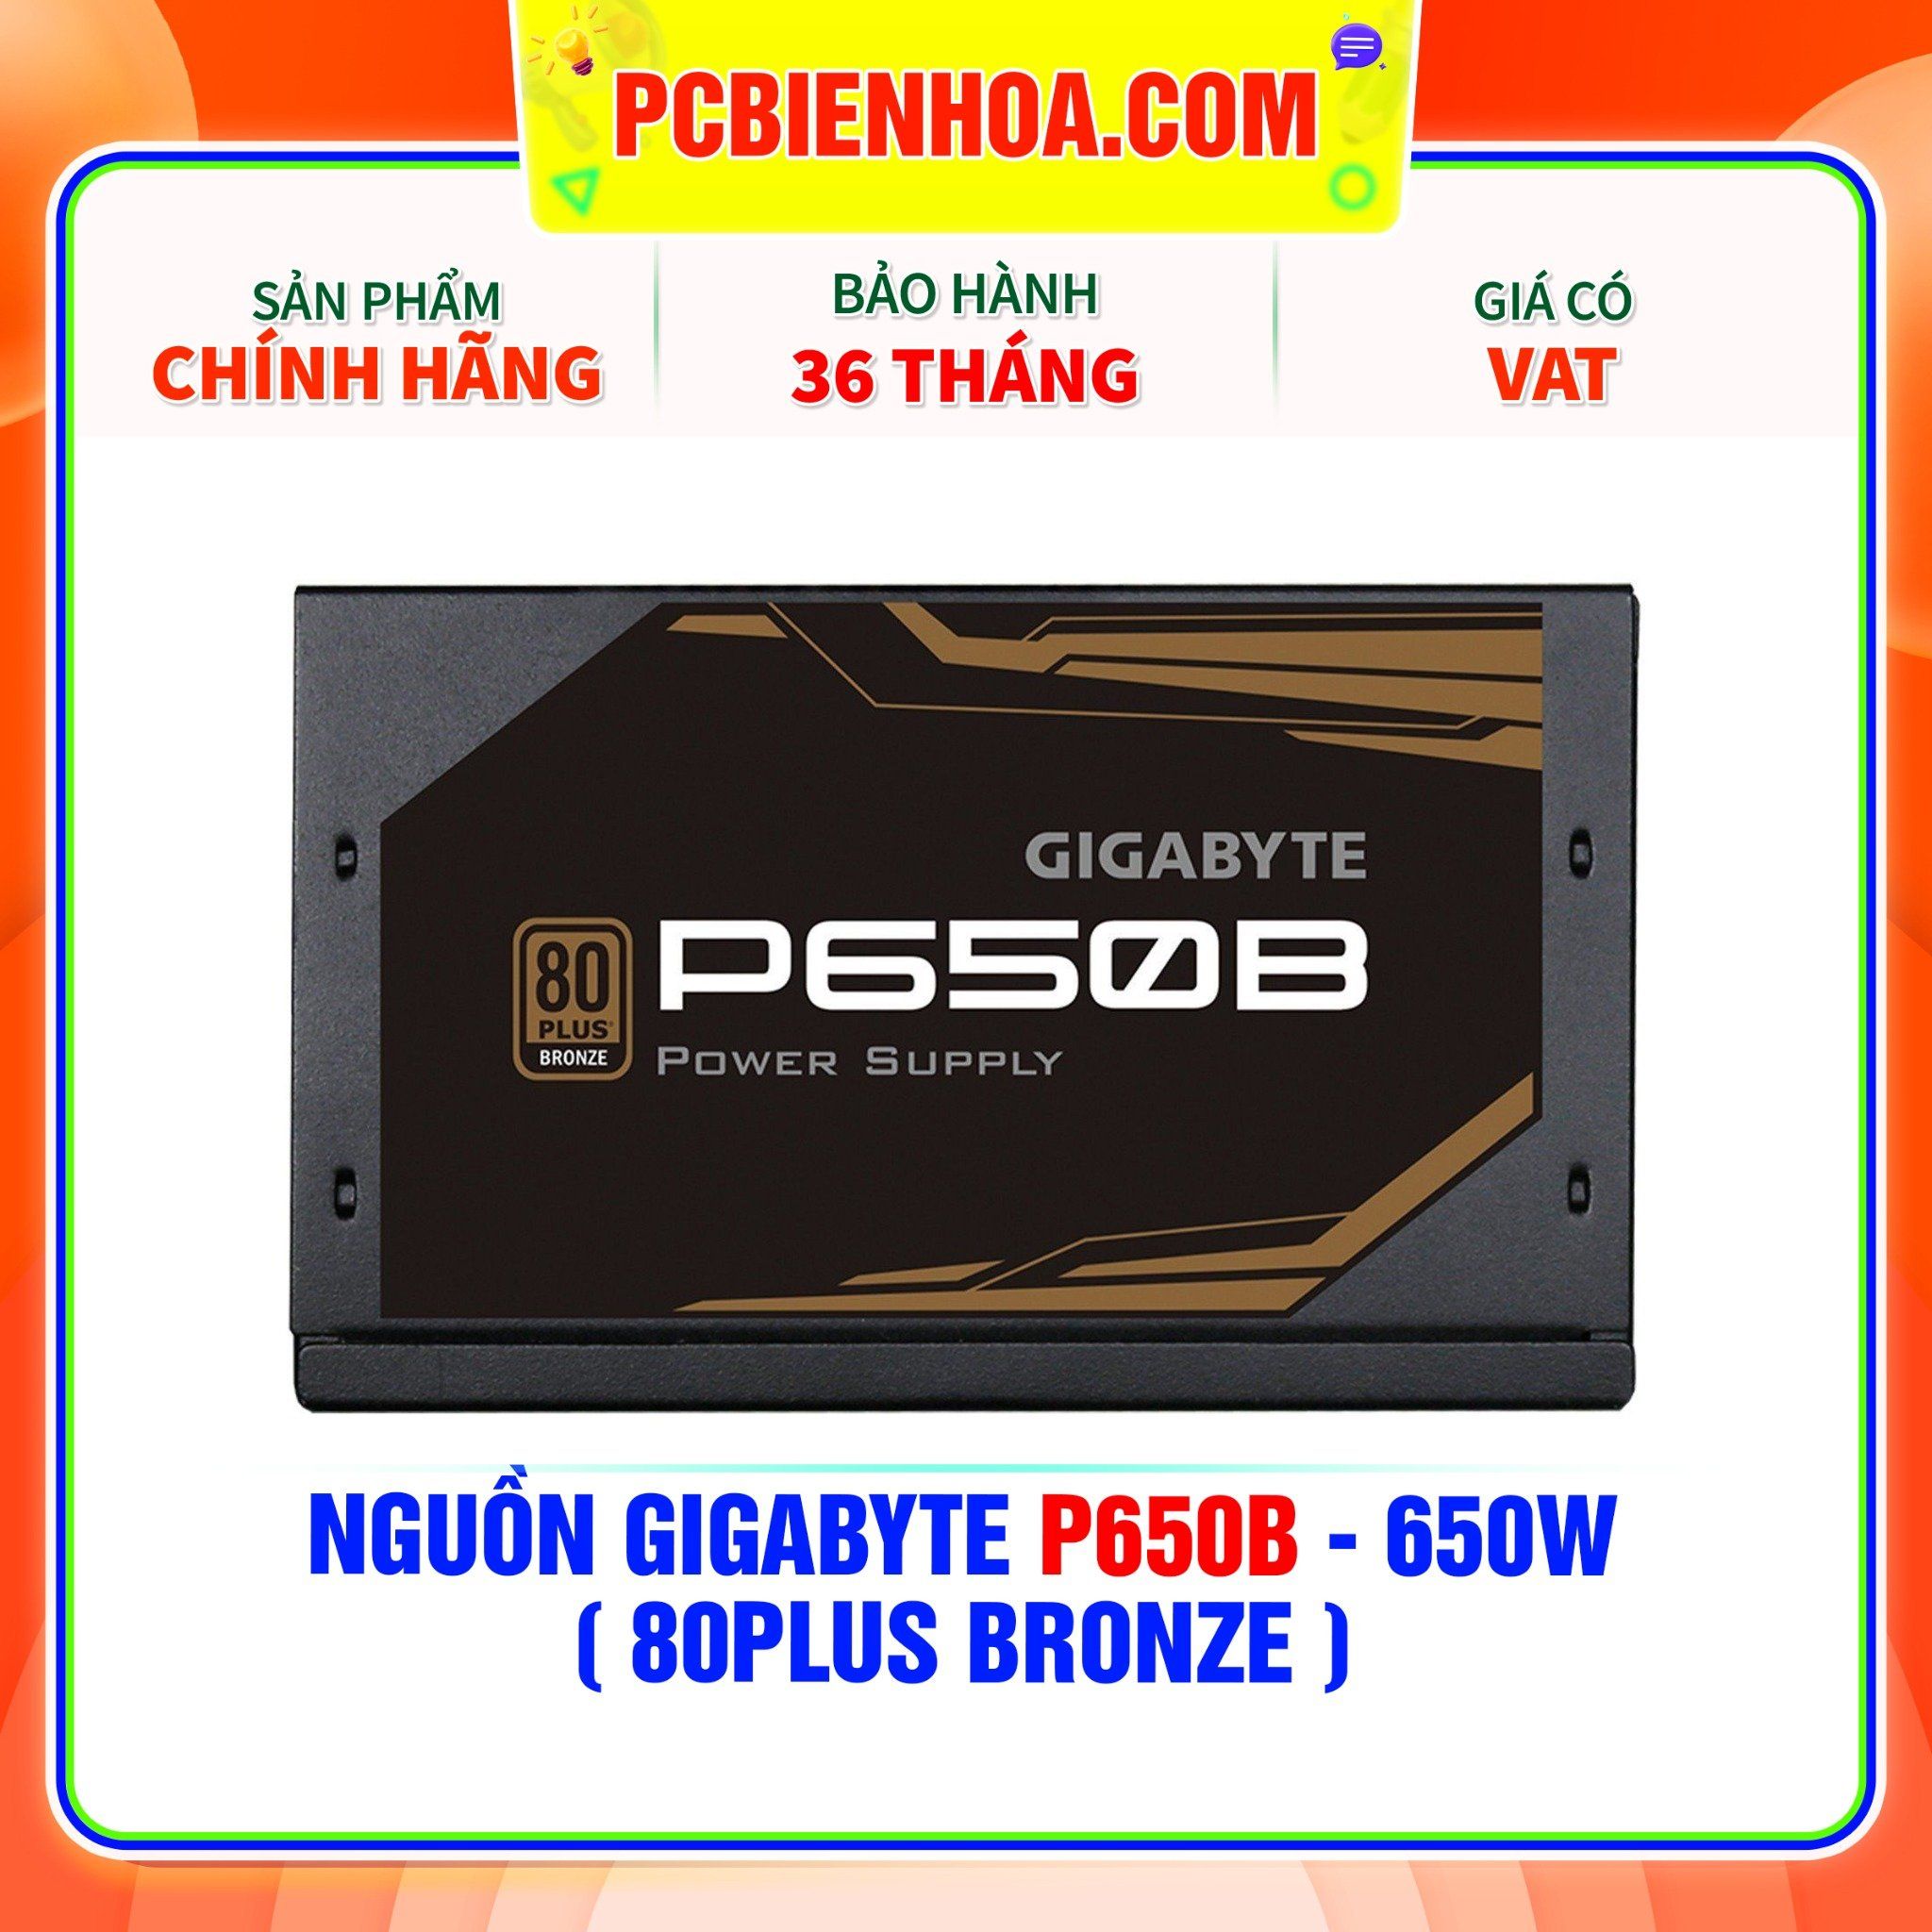  NGUỒN GIGABYTE P650B - 650W ( 80PLUS BRONZE ) 